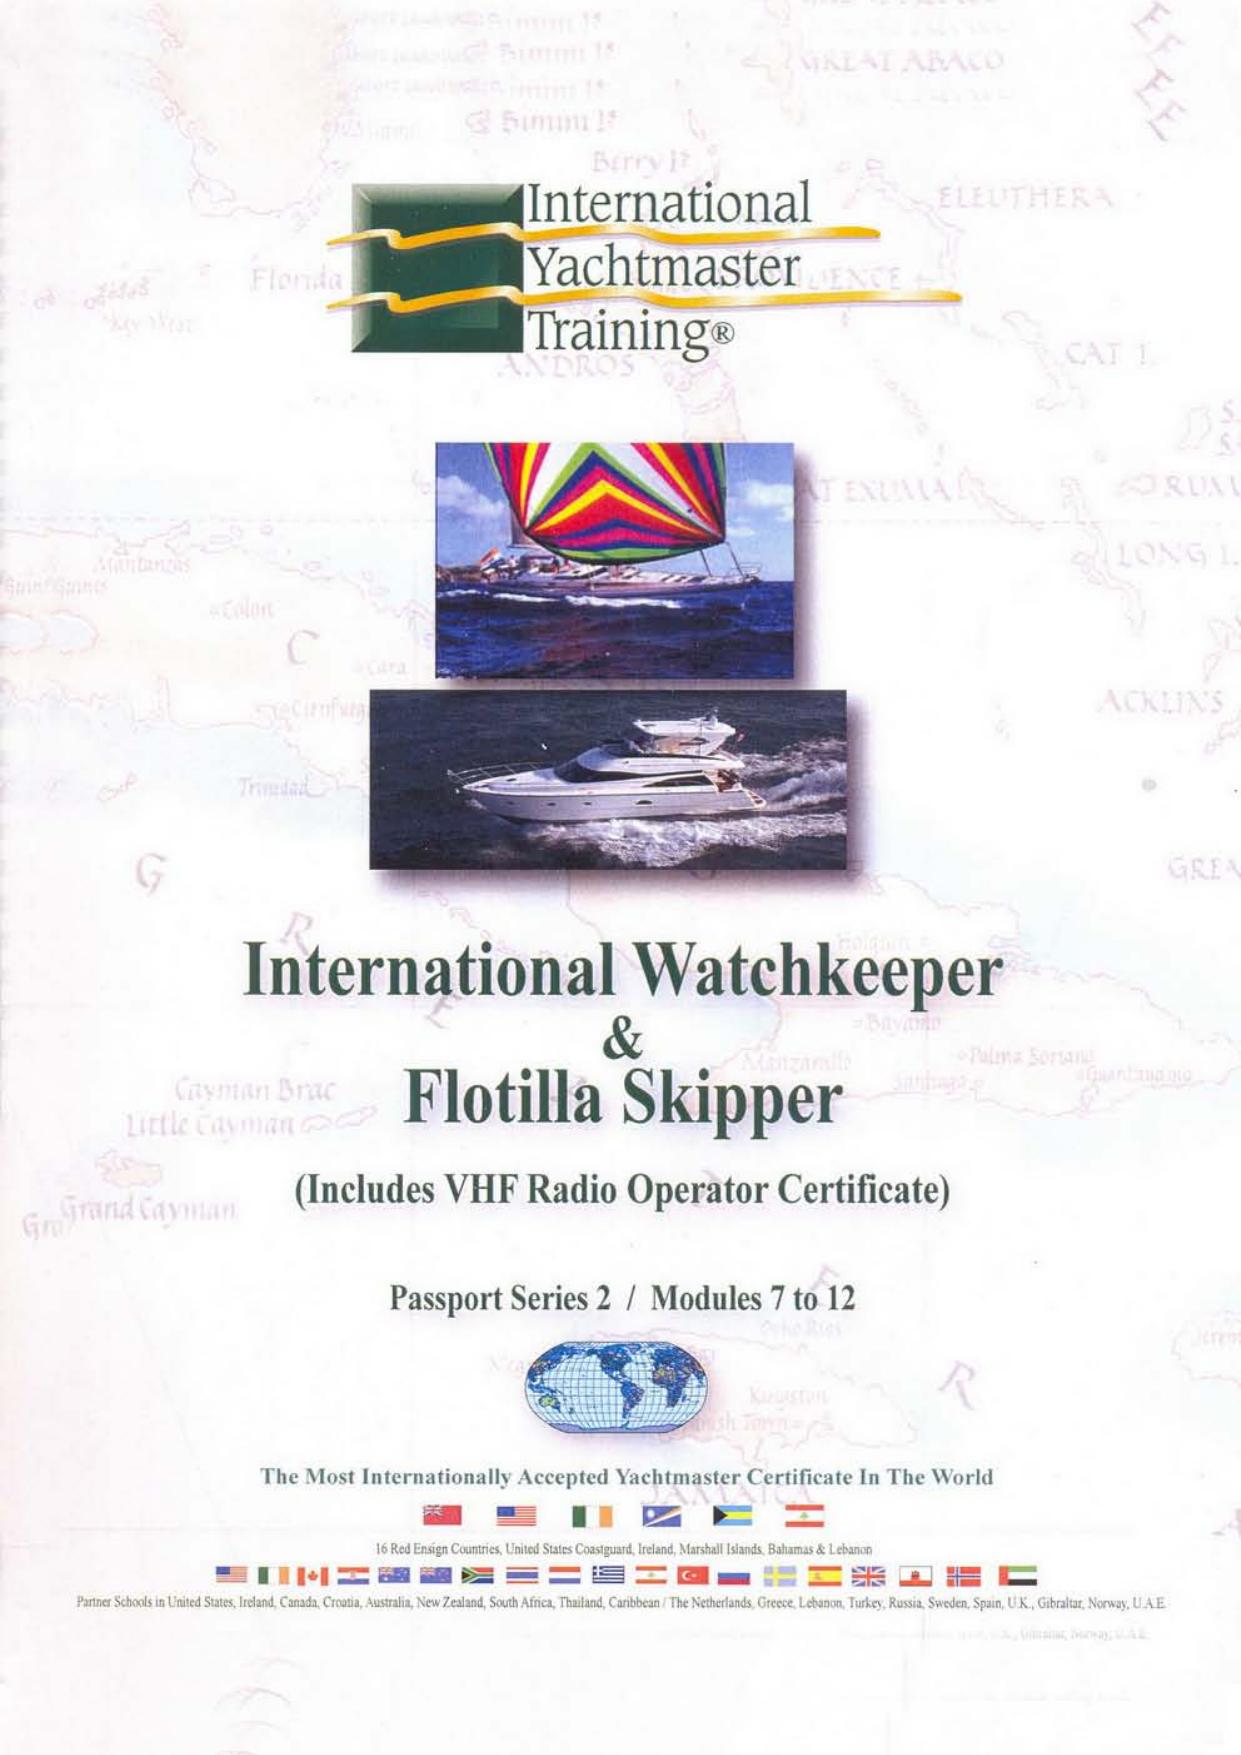 Internationa L Yachtmaster Training Training Programme